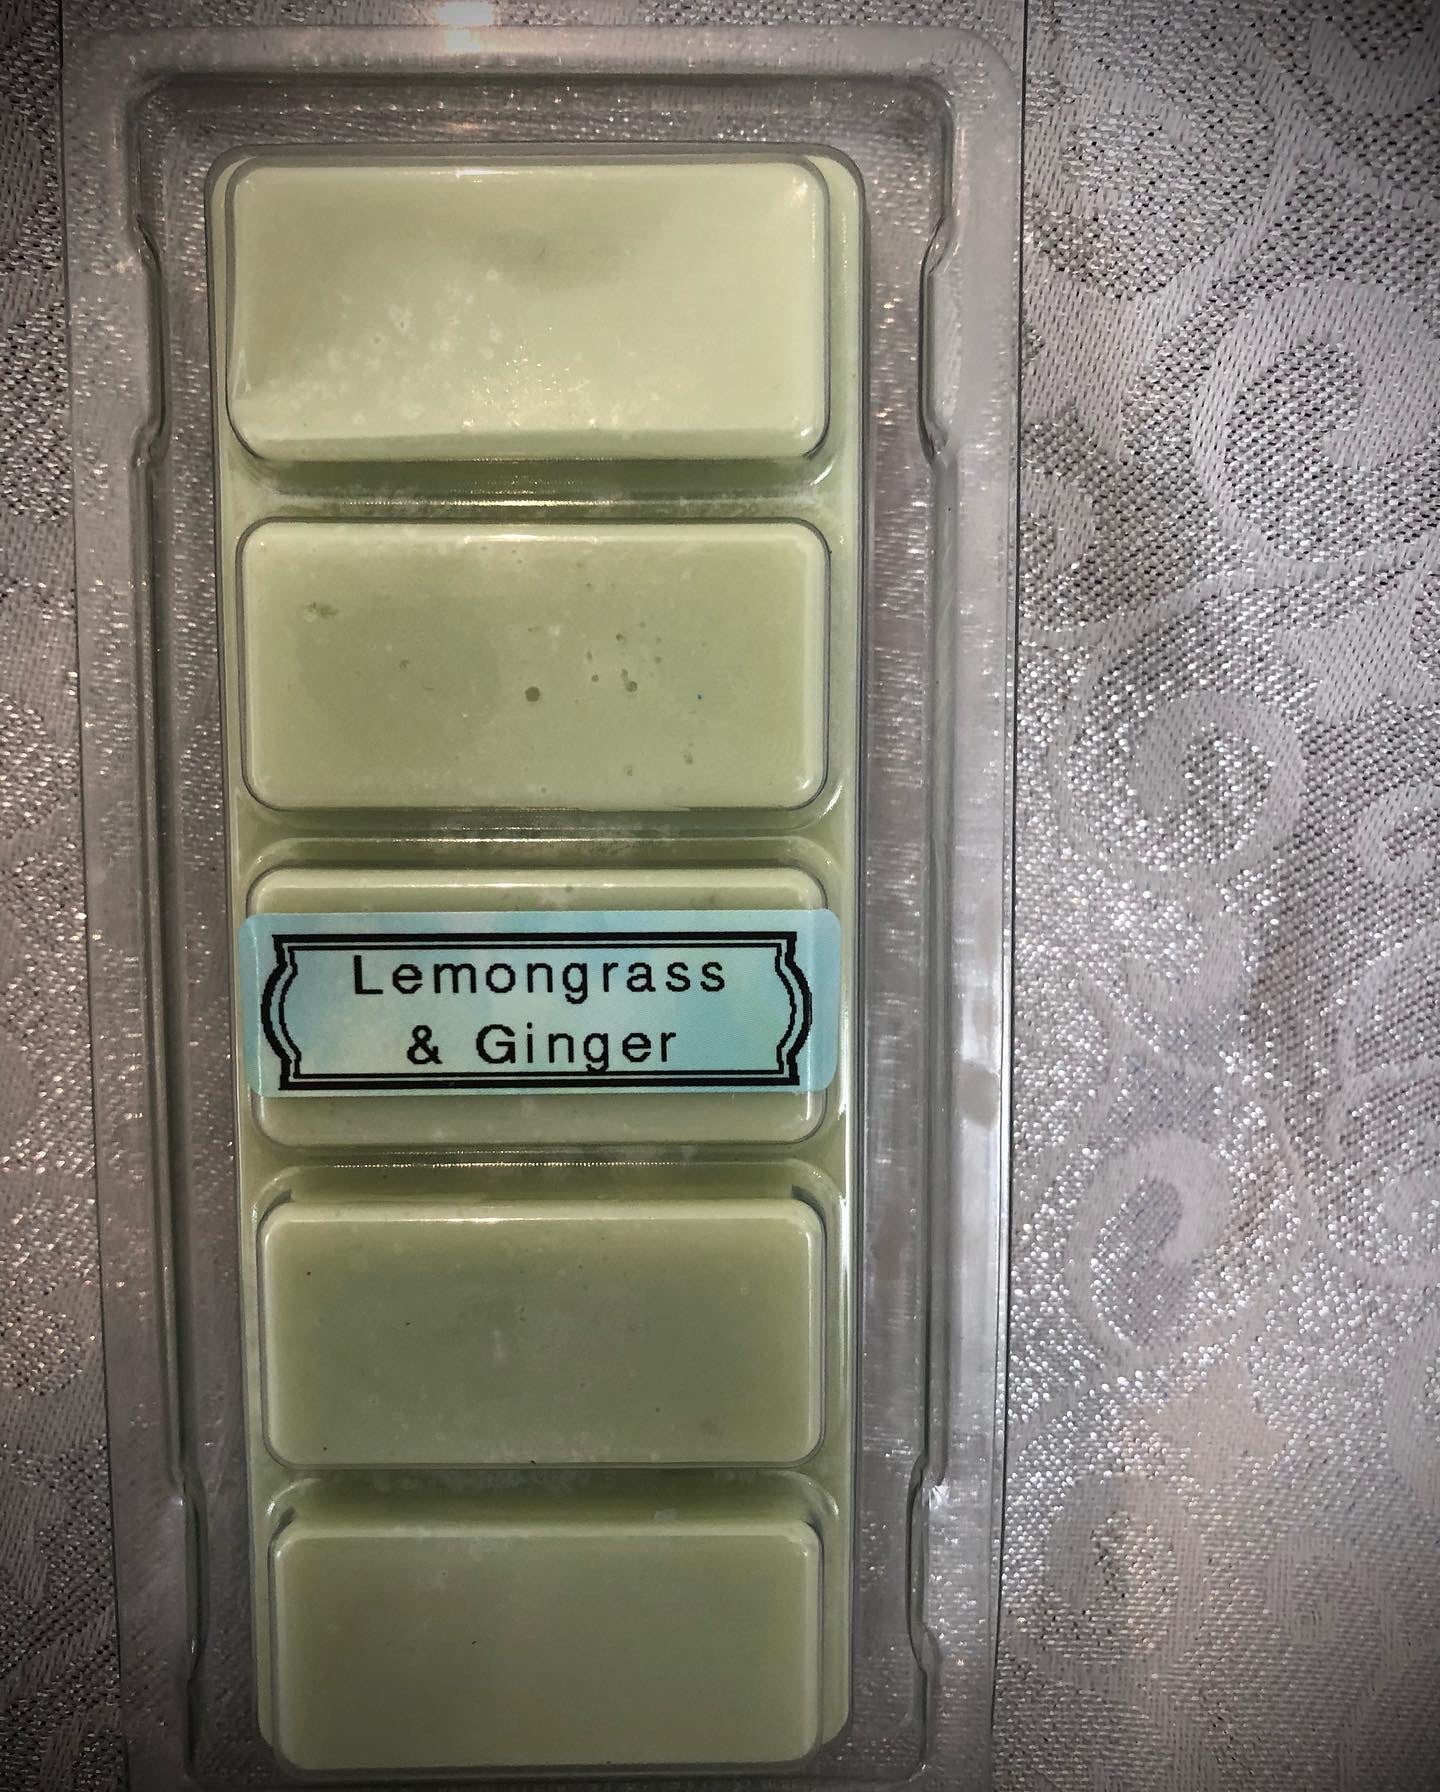 Lemongrass and ginger